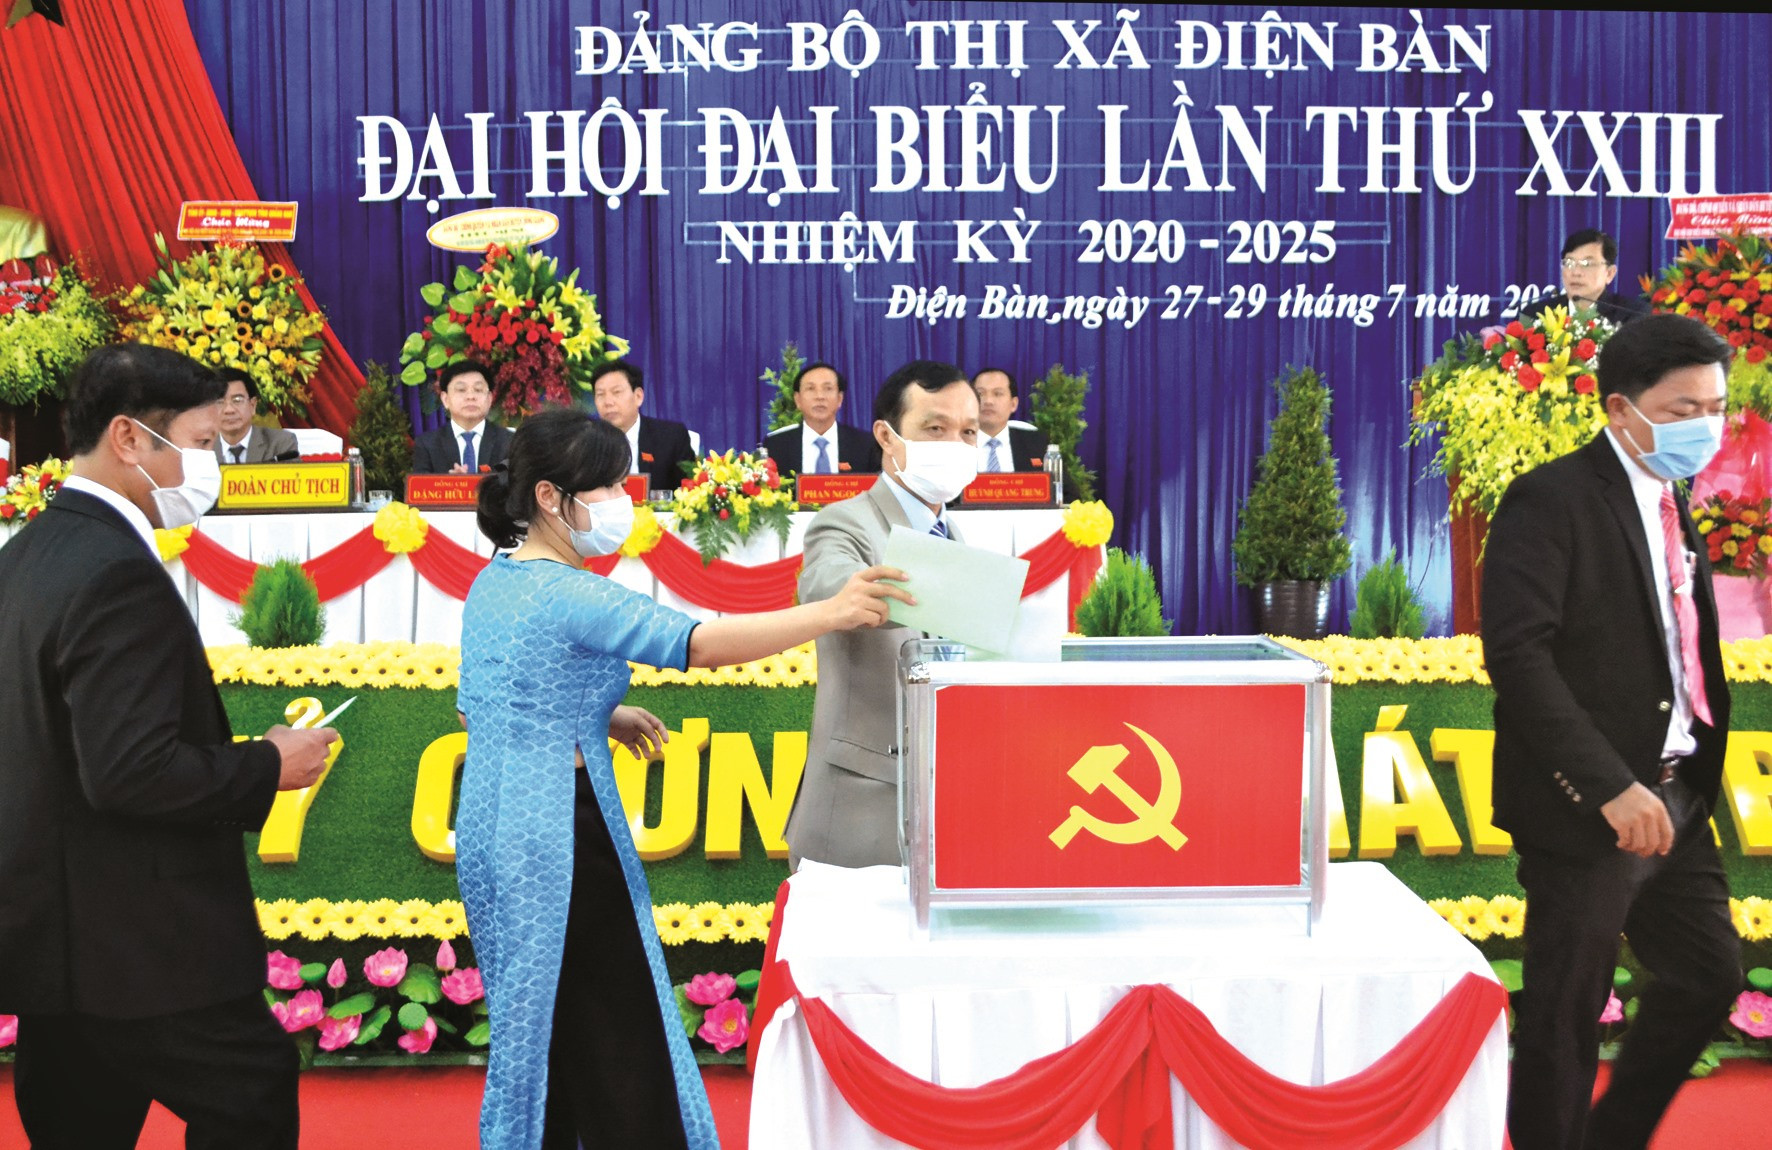 Đại hội đại biểu Đảng bộ thị xã Điện Bàn nhiệm kỳ 2020 - 2025. Ảnh: CÔNG TÚ